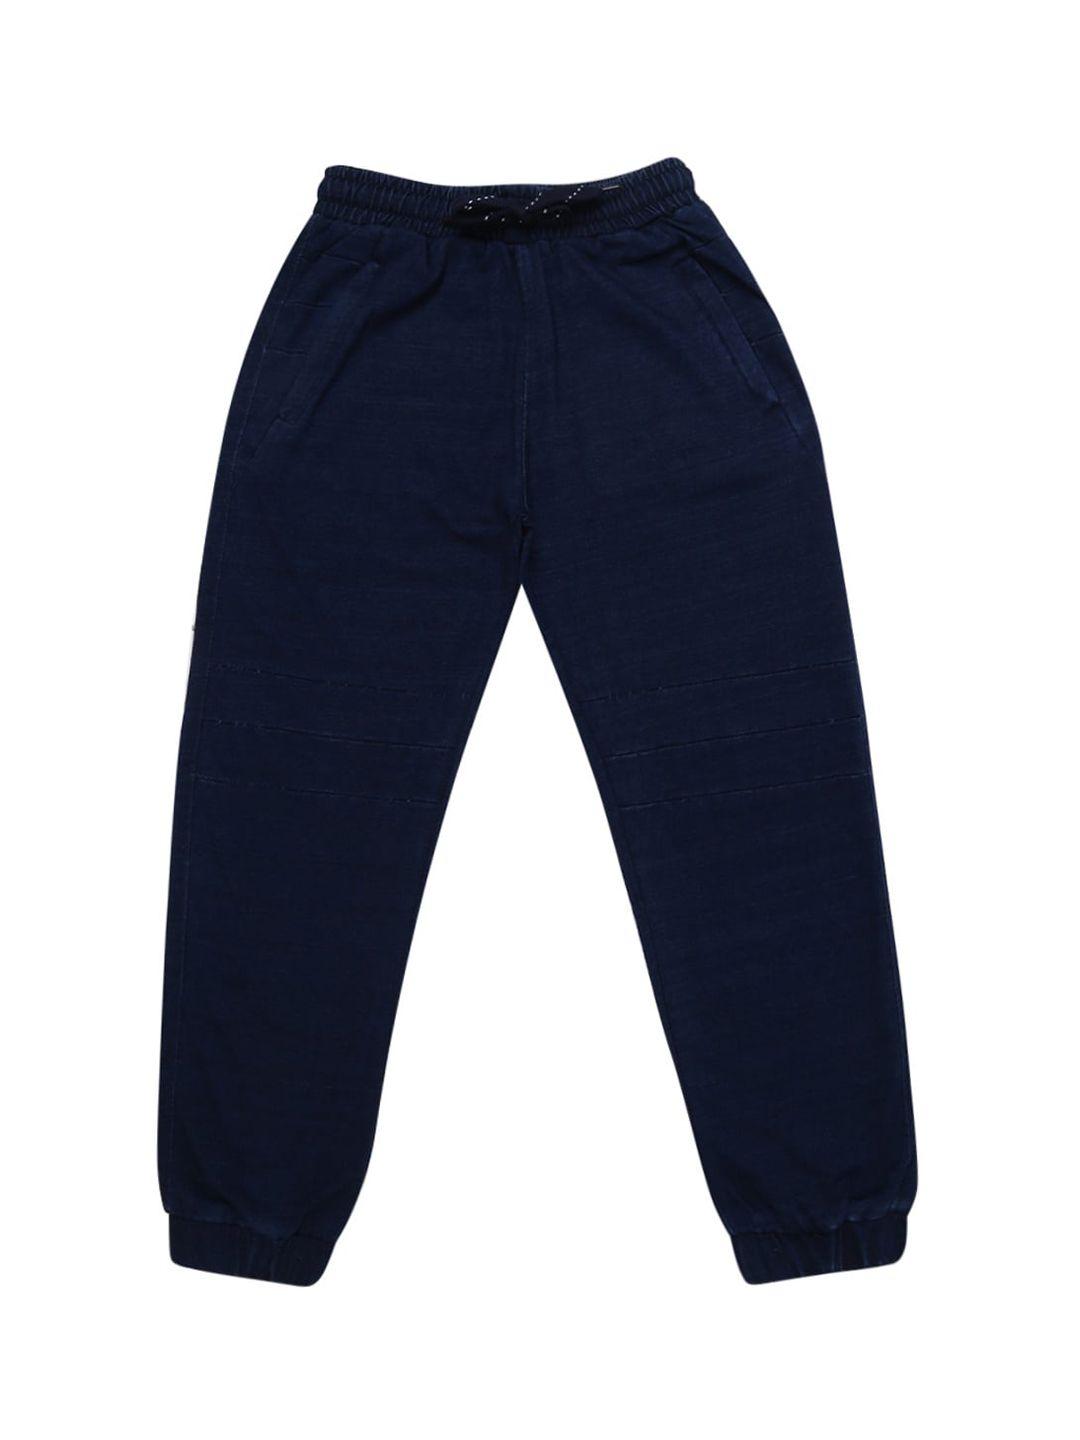 v-mart boys navy blue solid jogger track pants